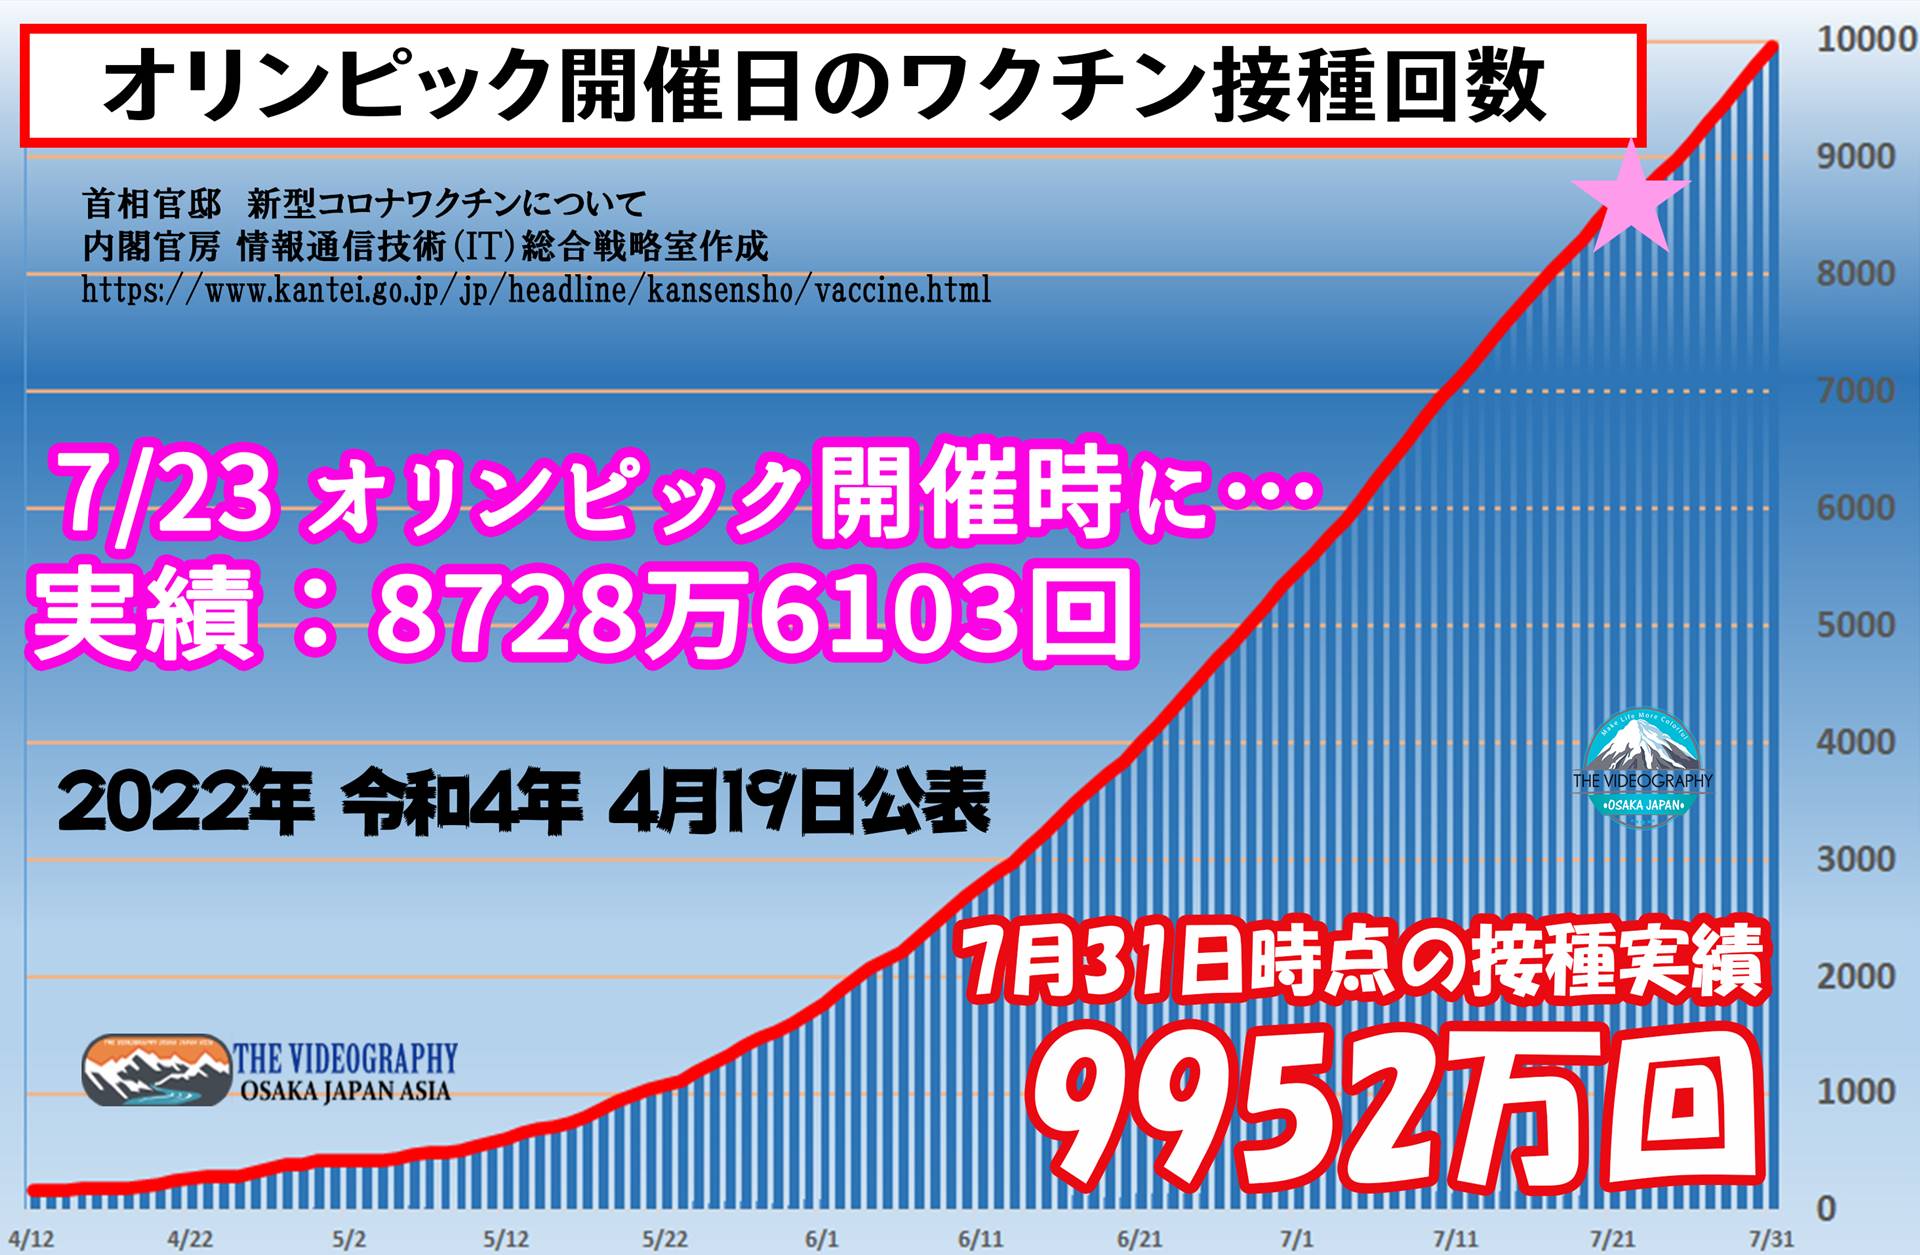 オリンピックまでに日本のワクチン接種対象者の過半数が1回可能